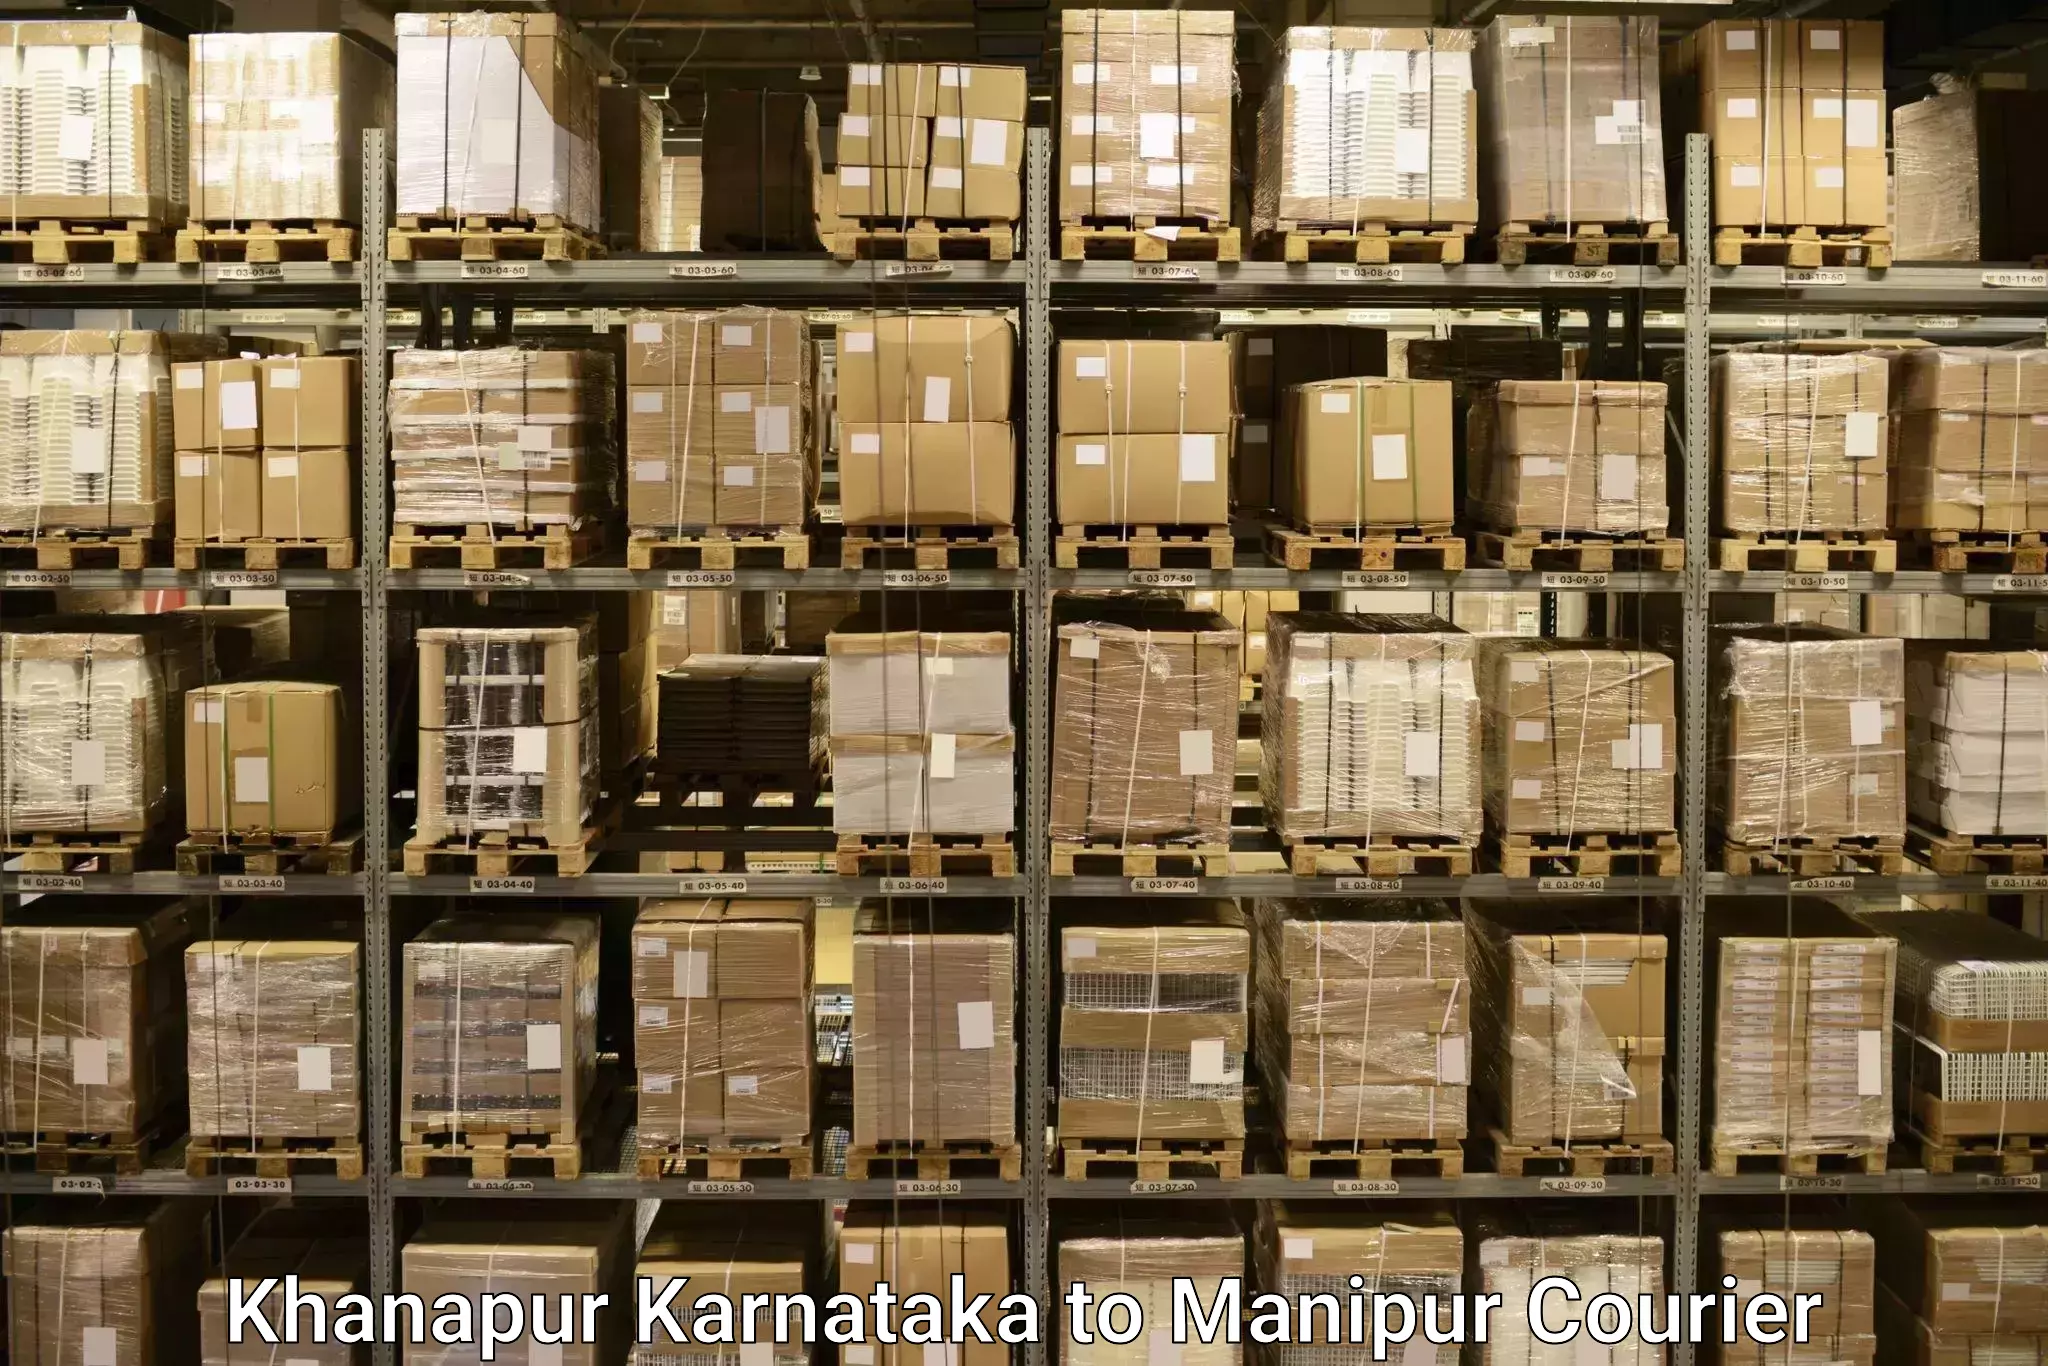 Baggage transport scheduler Khanapur Karnataka to Tamenglong